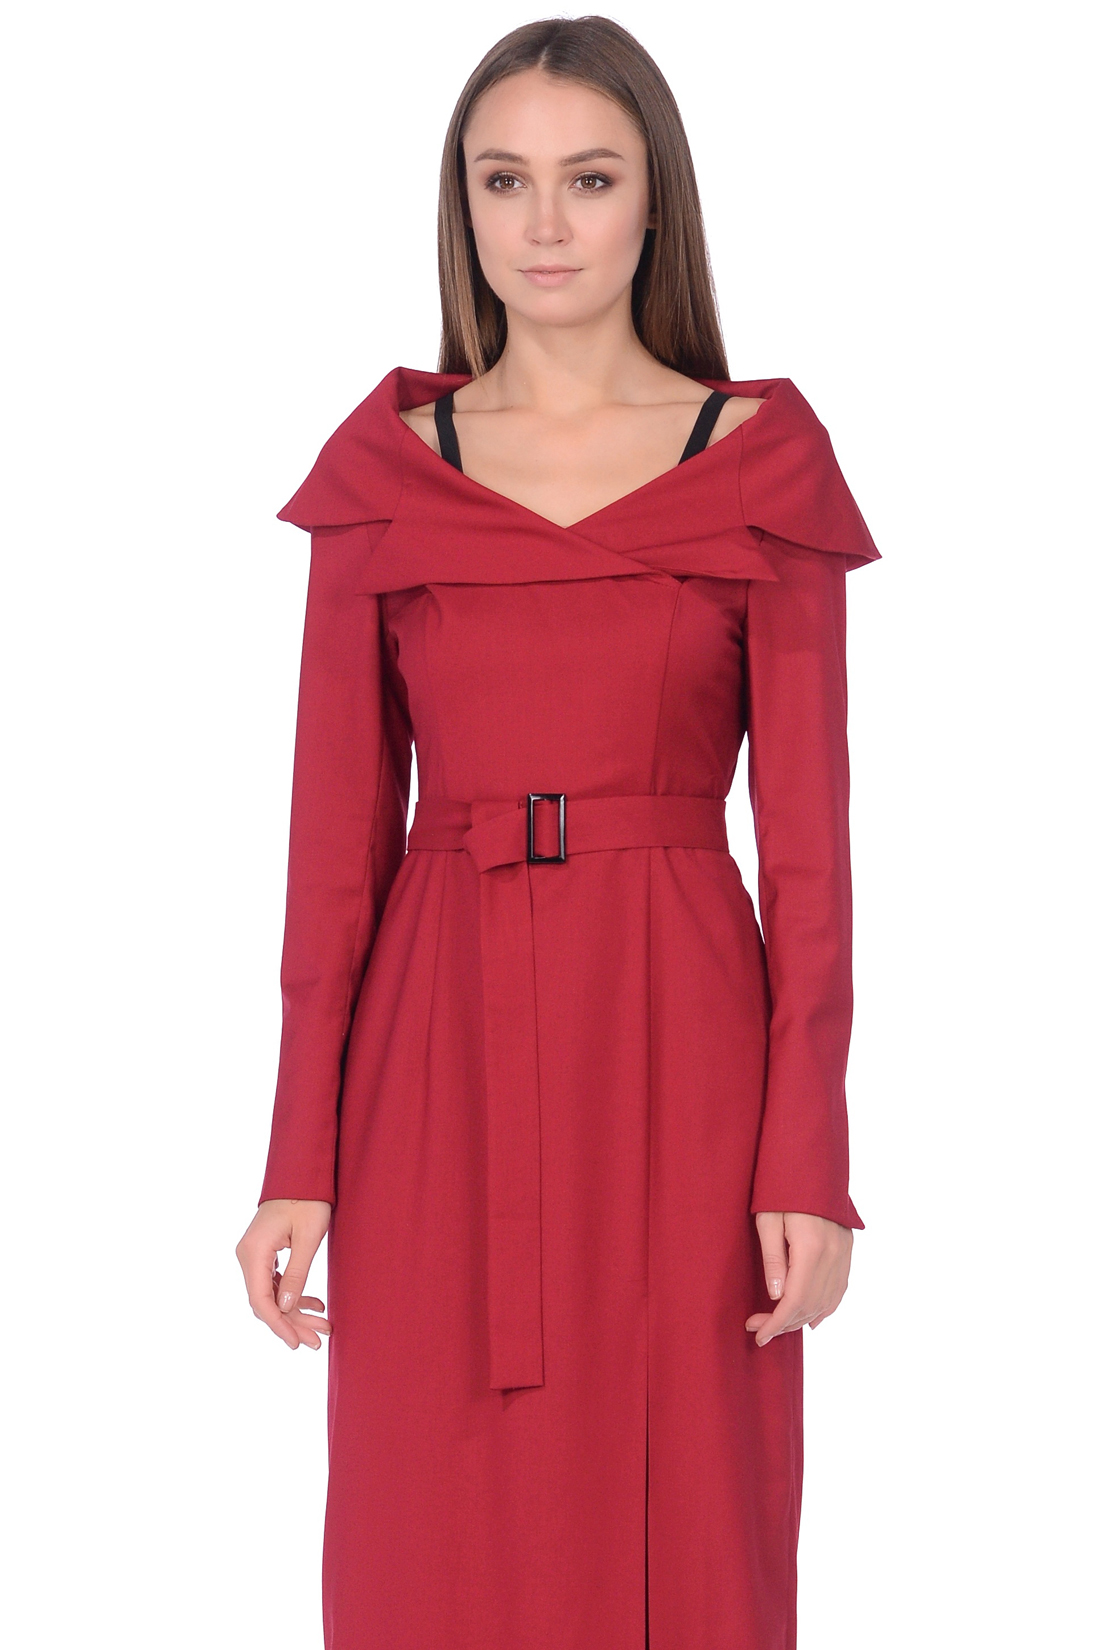 Длинное платье с разрезом (арт. baon B458574), размер M, цвет красный Длинное платье с разрезом (арт. baon B458574) - фото 3